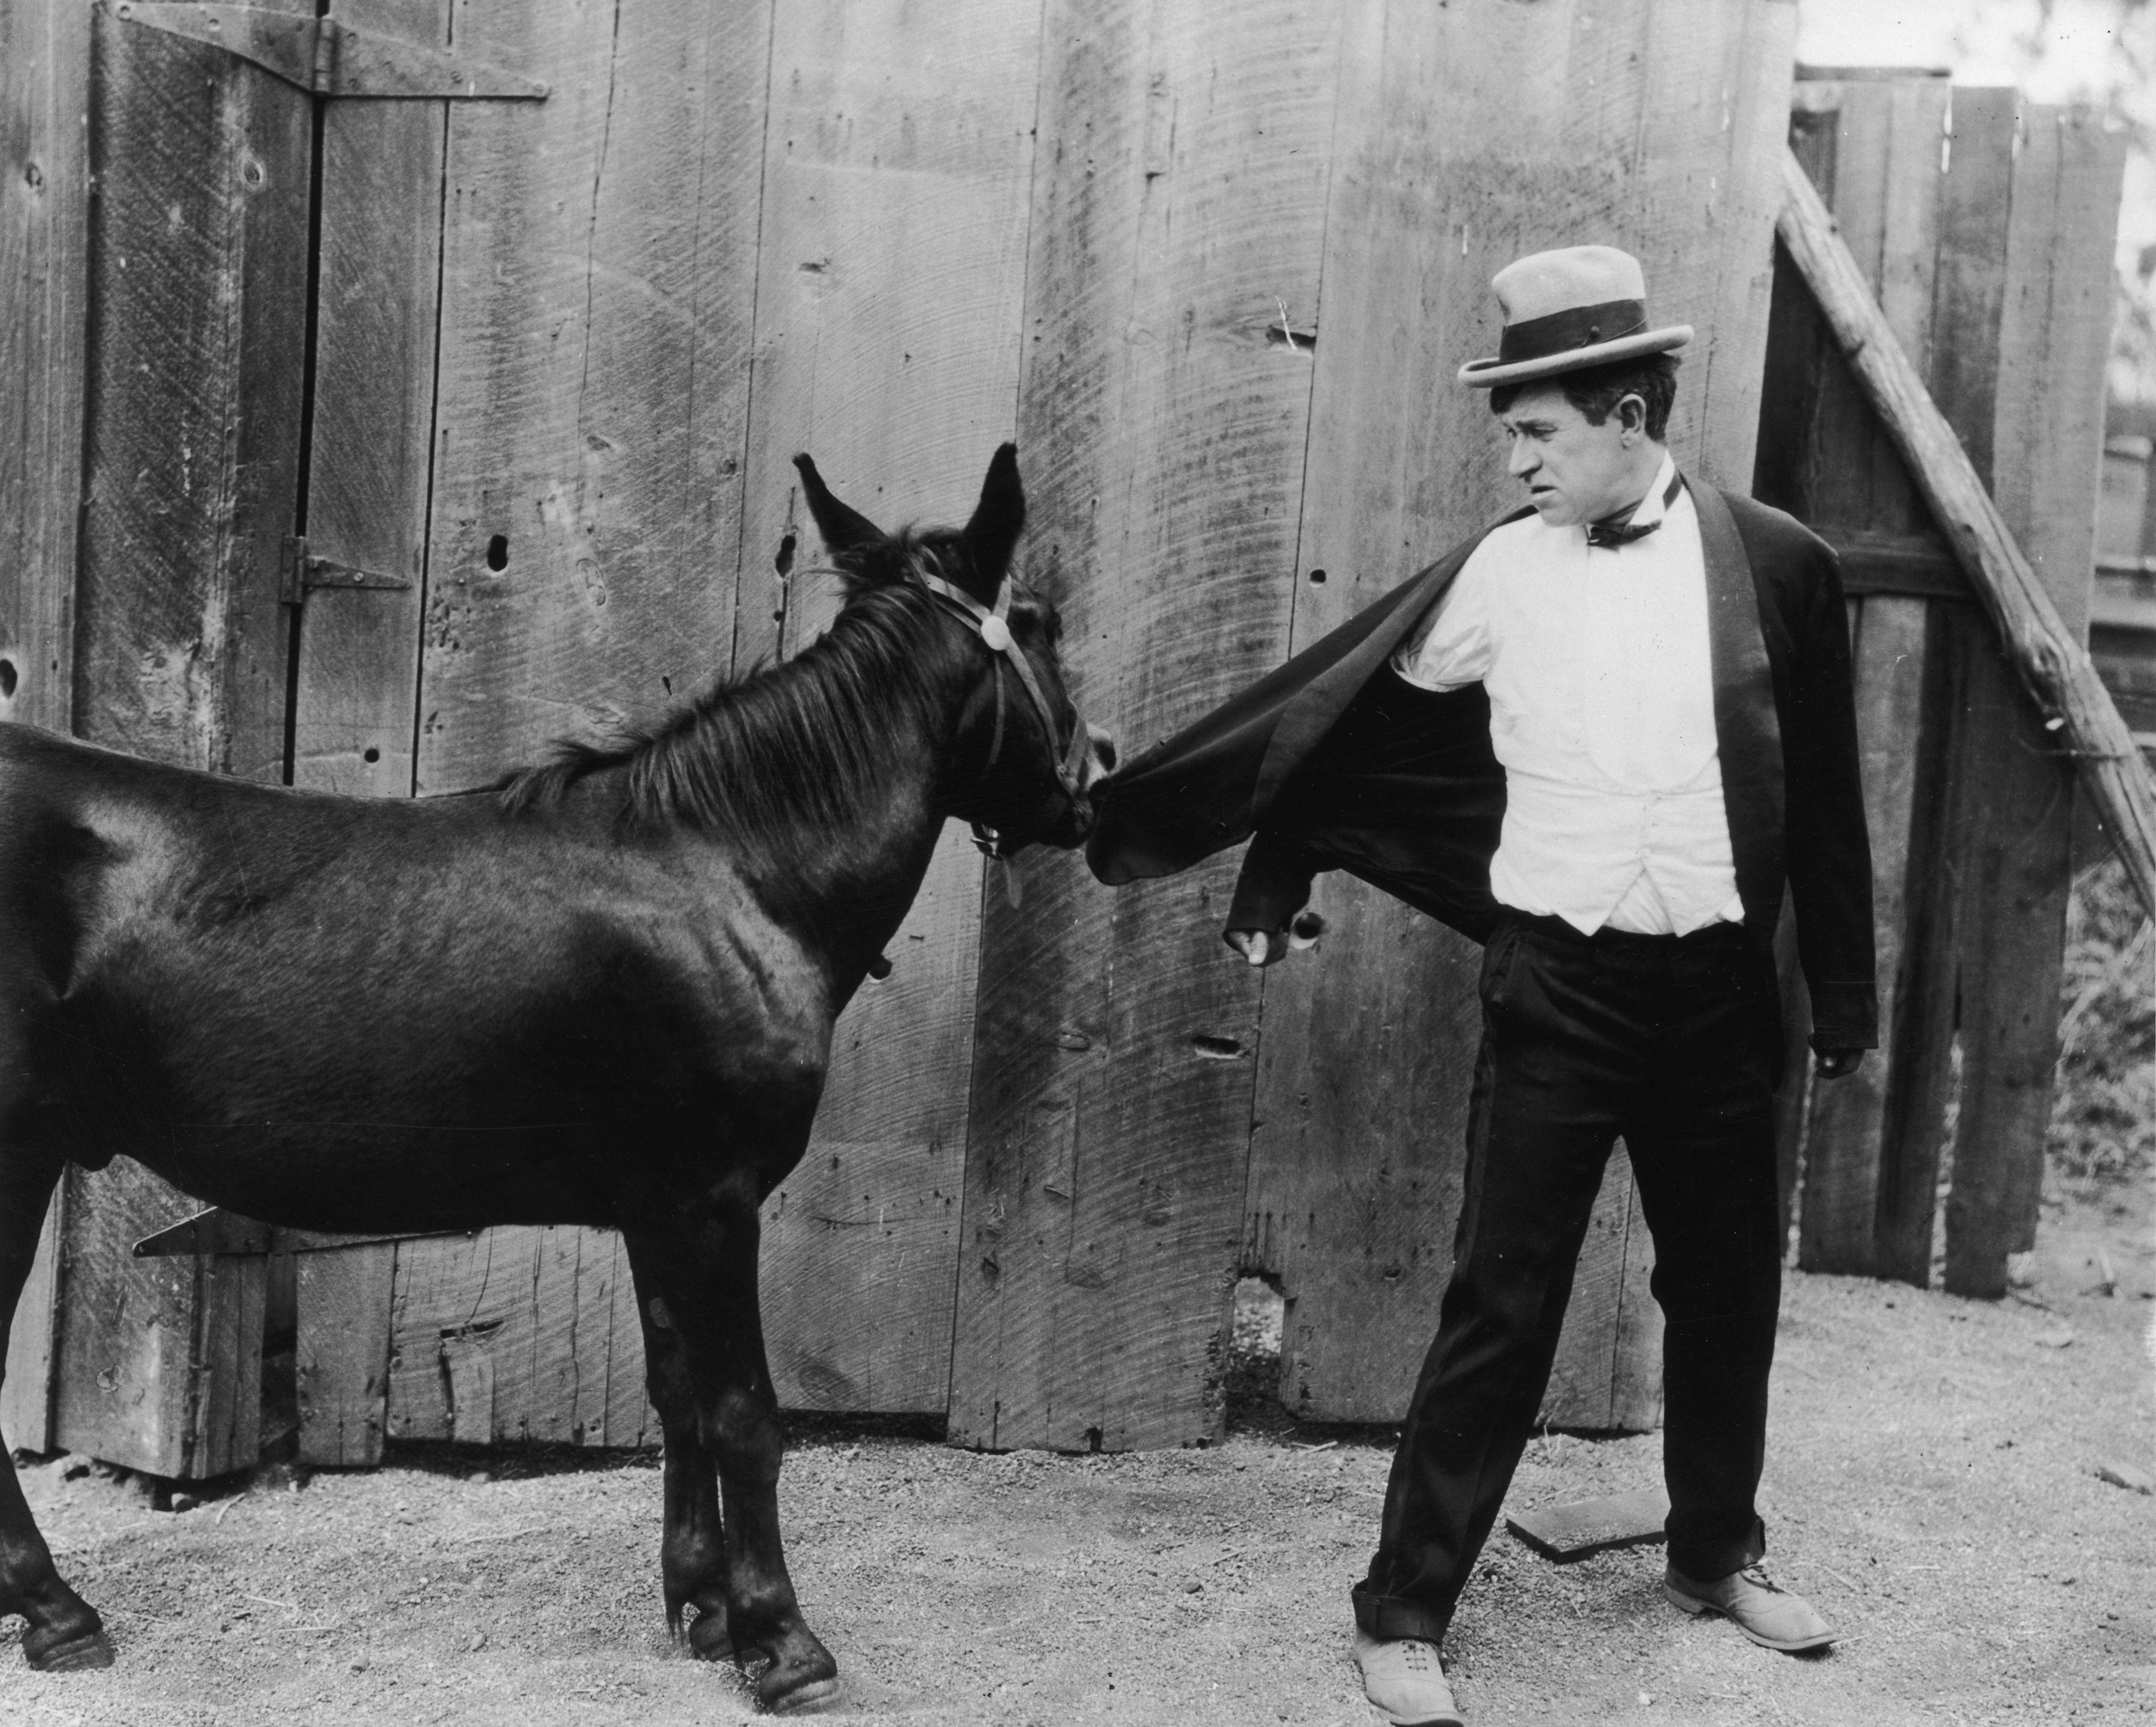 circa 1925: Amerikanischer Schauspieler und Comedian Will Rogers (1879-1935) schaut zurück, während ein Eisel sein Jackett festhält in einem nicht identifizierten Filmausschnitt. | Foto von: American Stock/Getty Images